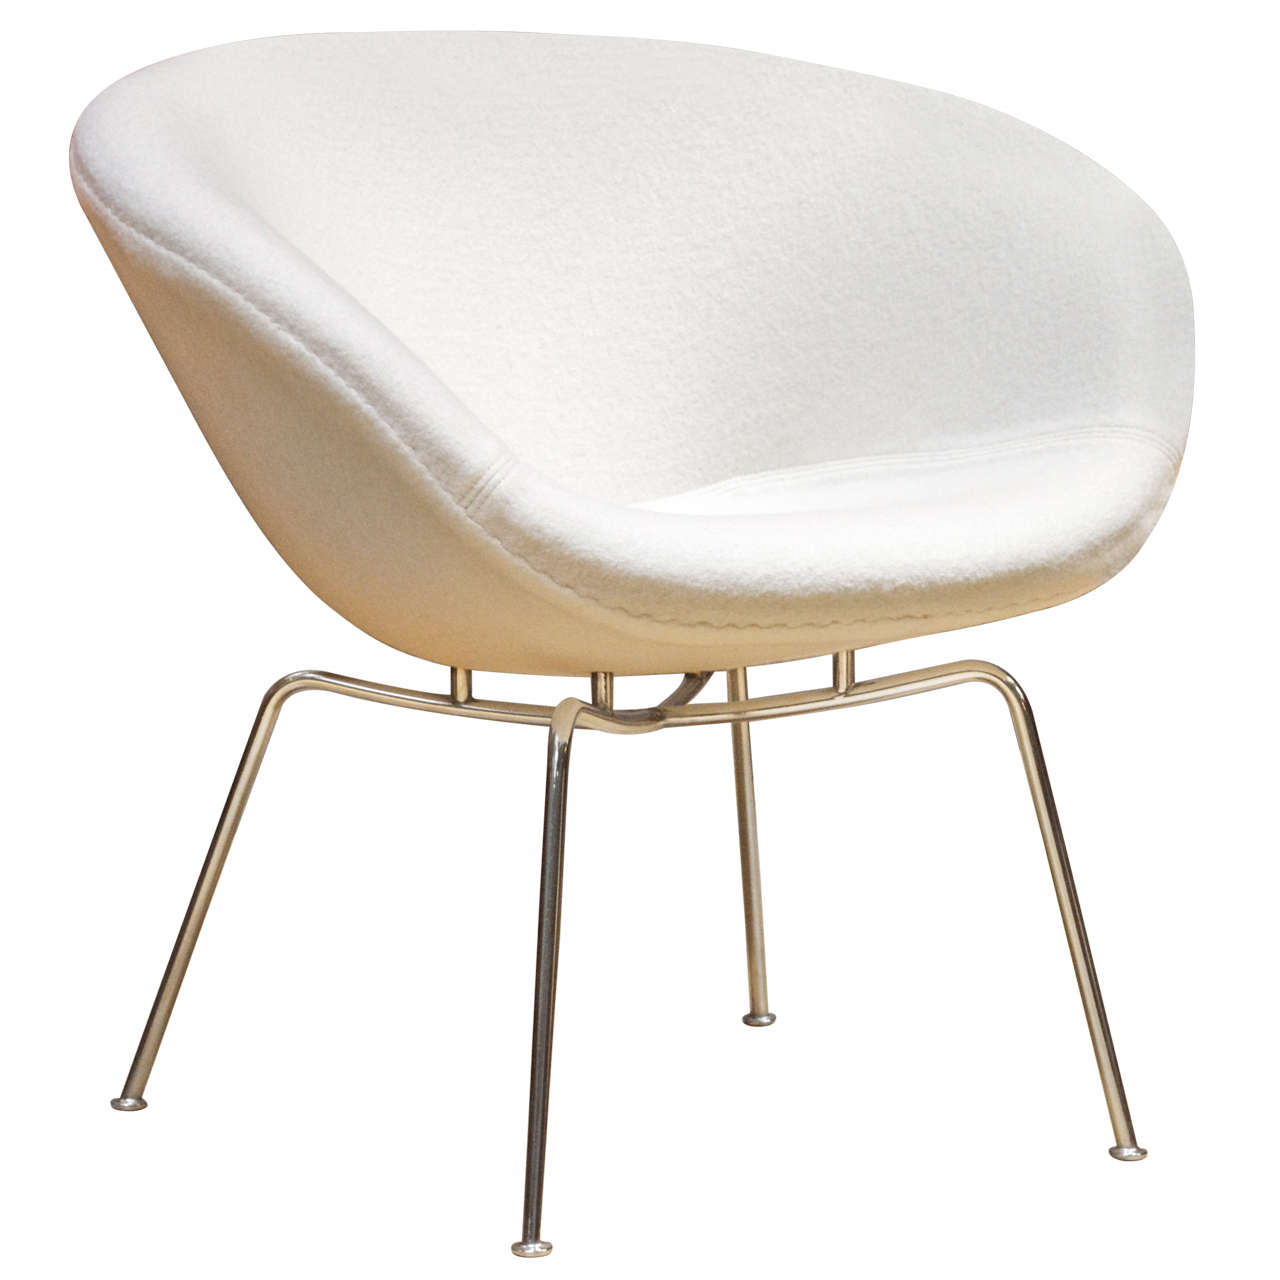 Arne Jacobsen for Fritz Hansen - Pot Chair, Model 3318